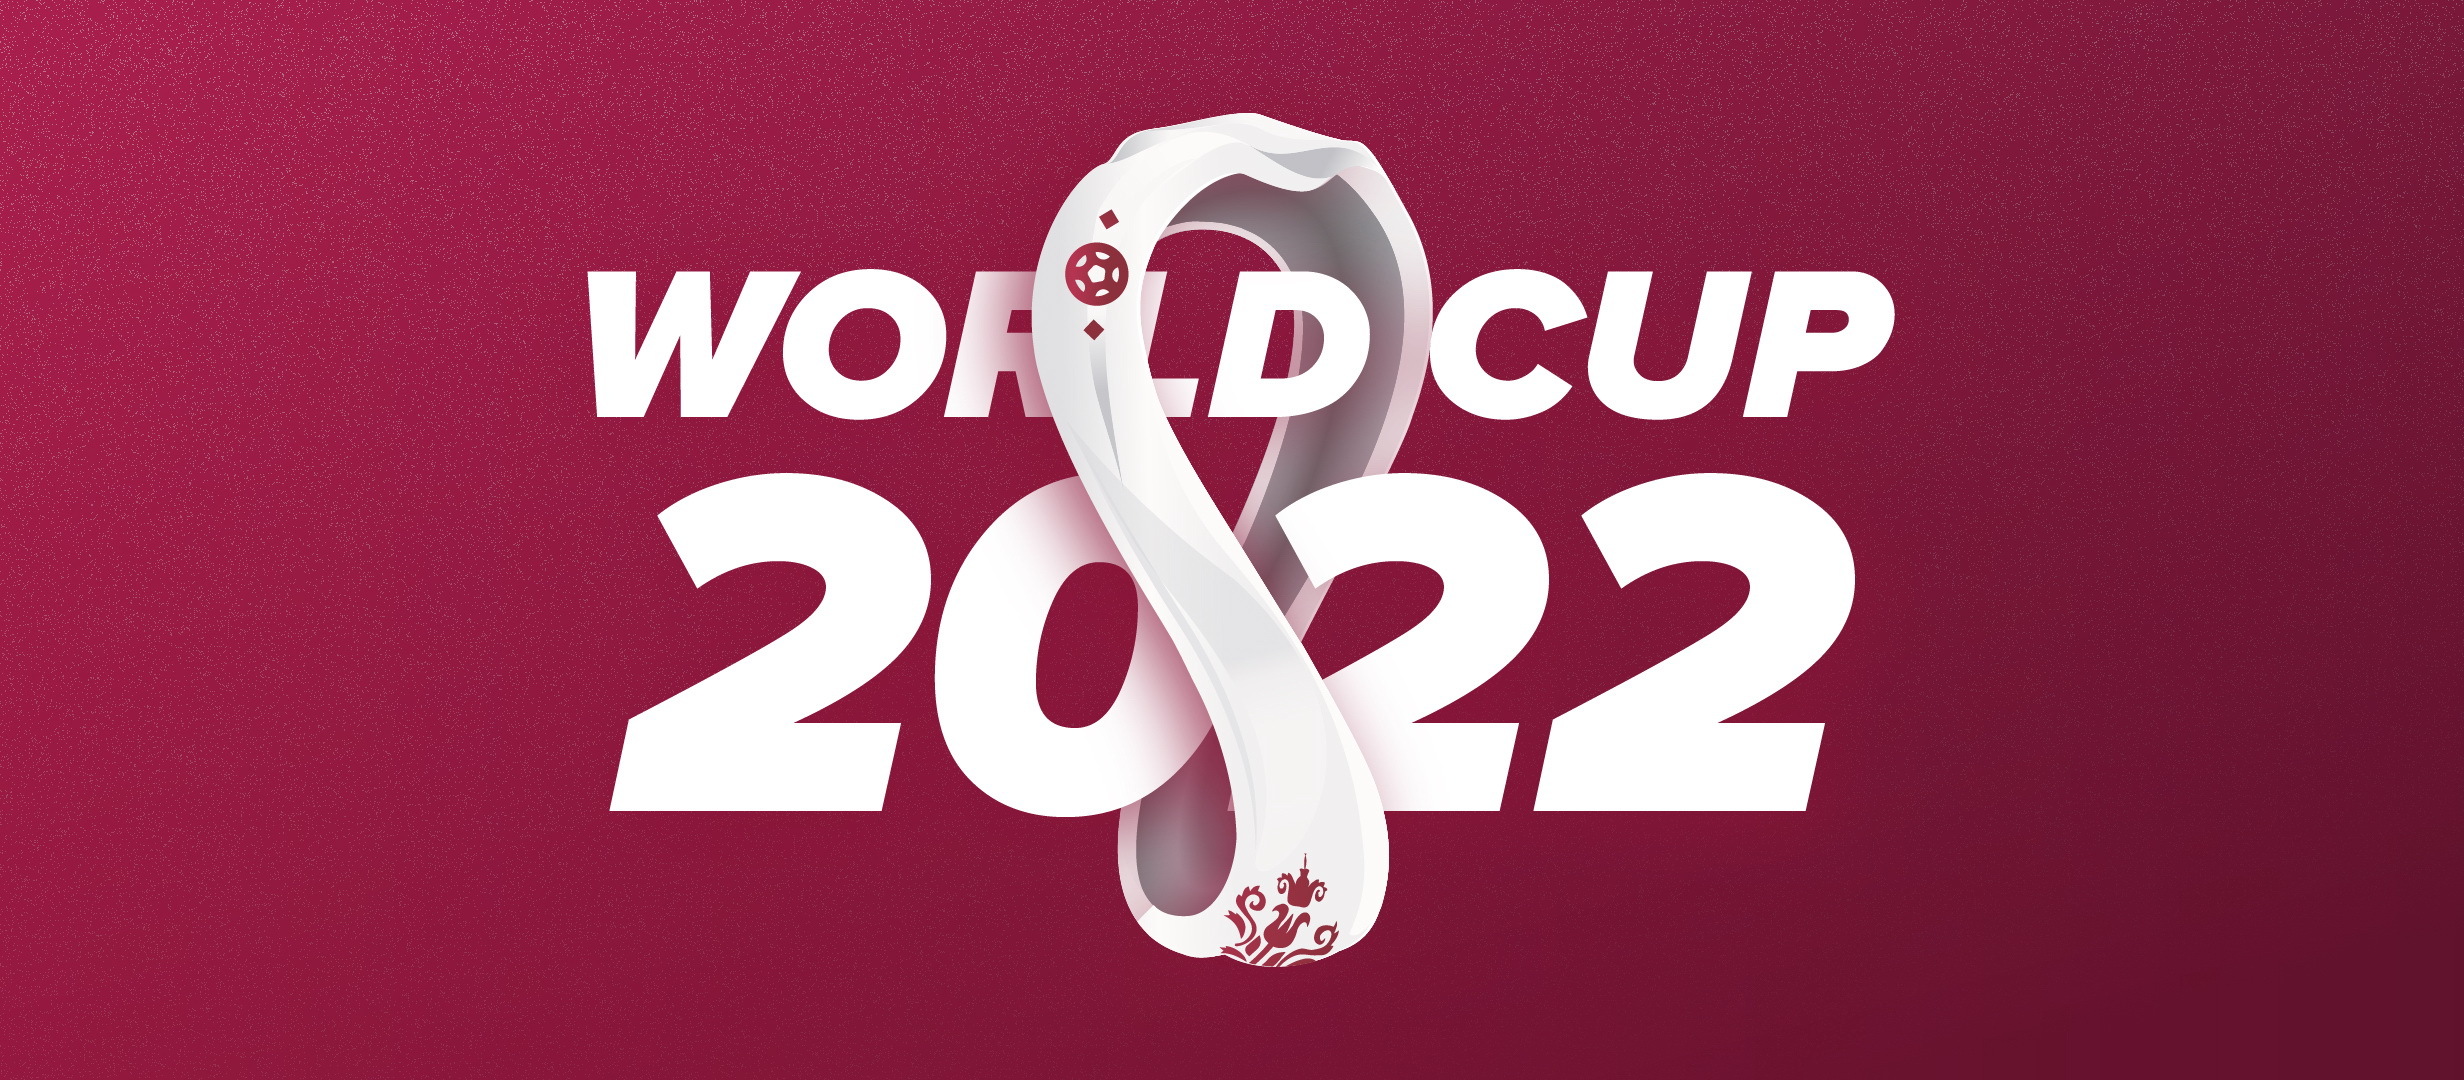 Echipele de la  World Cup 2022: jucatori, antrenori, statistici